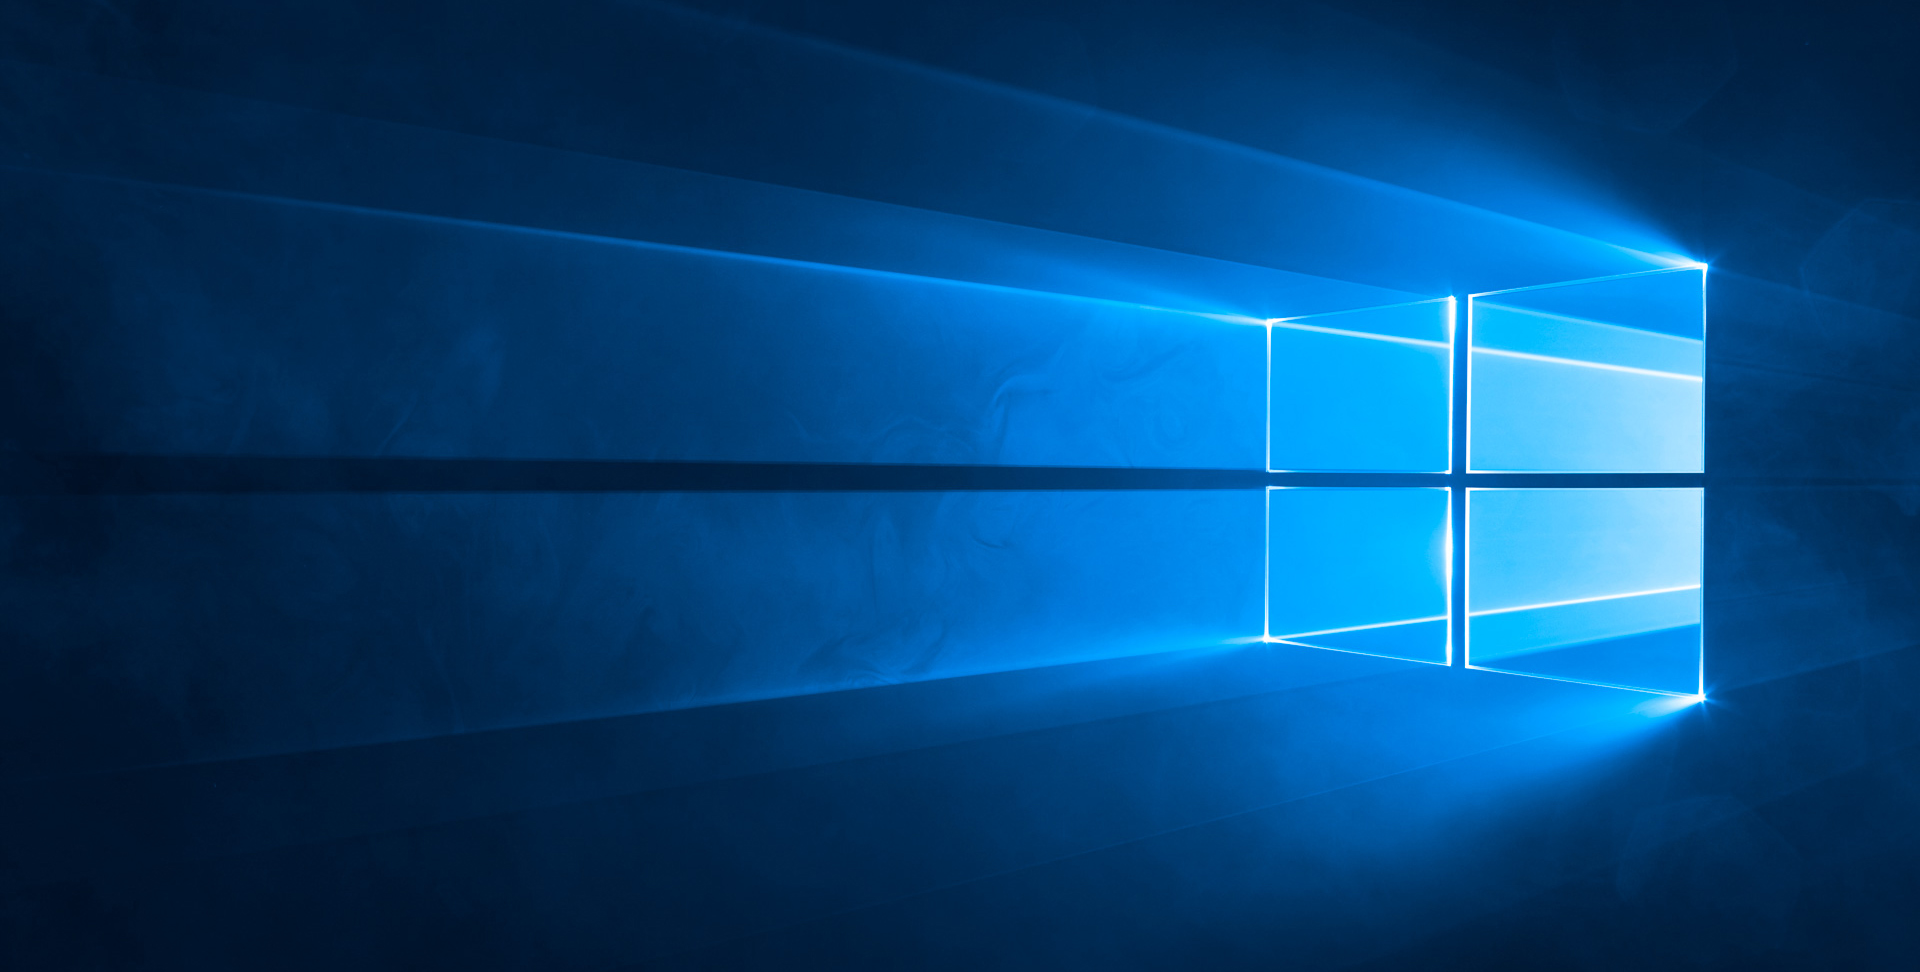 Windows 10 устройств запущены 4 сентября 1